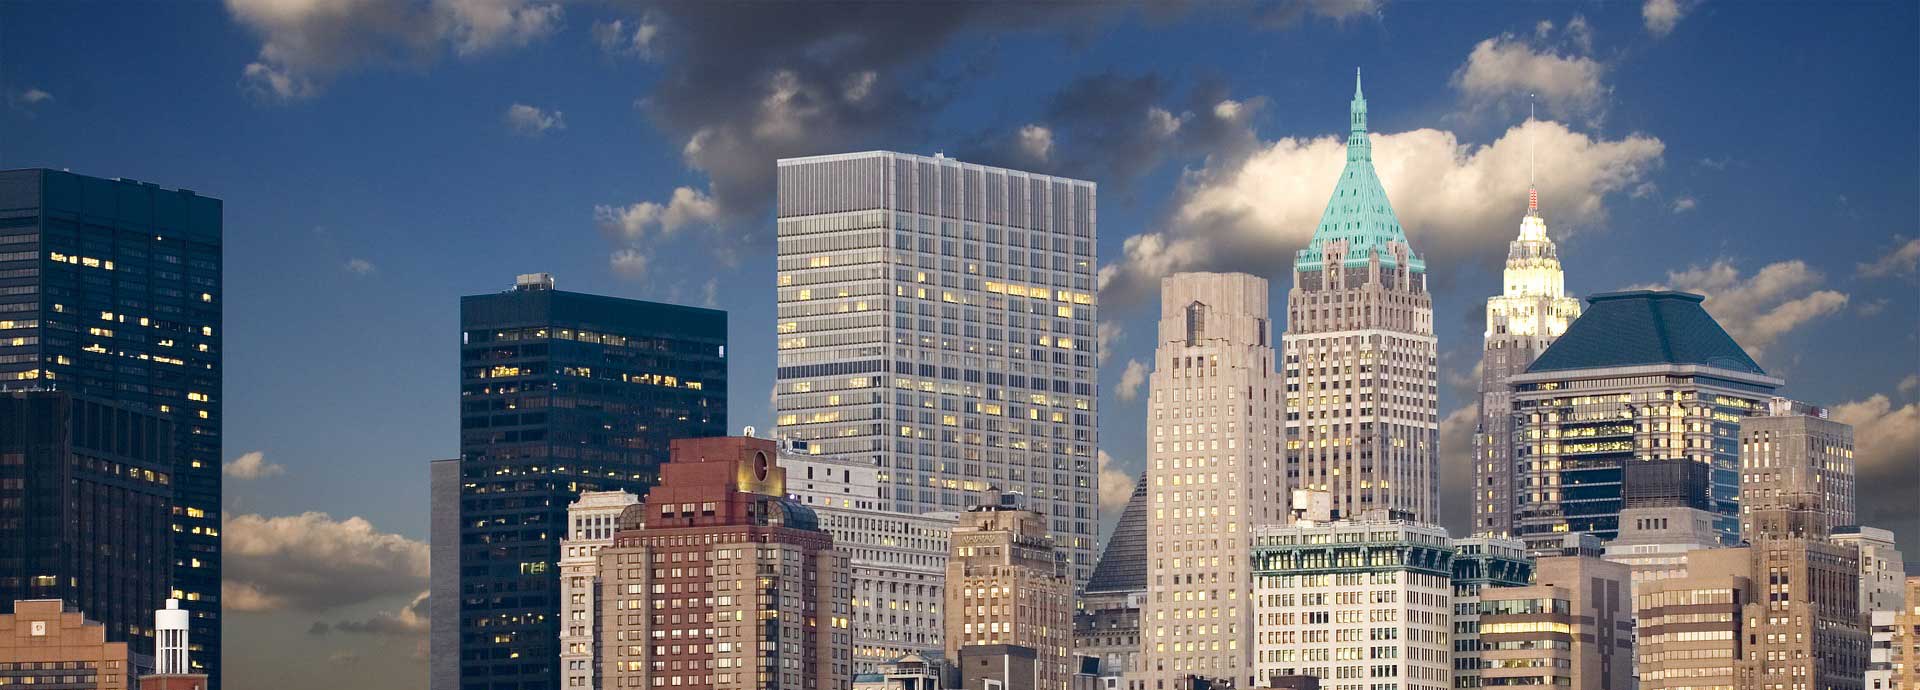 미국의 독자적인 세계, 거대한 독특한 도시의 뉴욕에 렌터카 타고 다니다! Rentingcarz.com